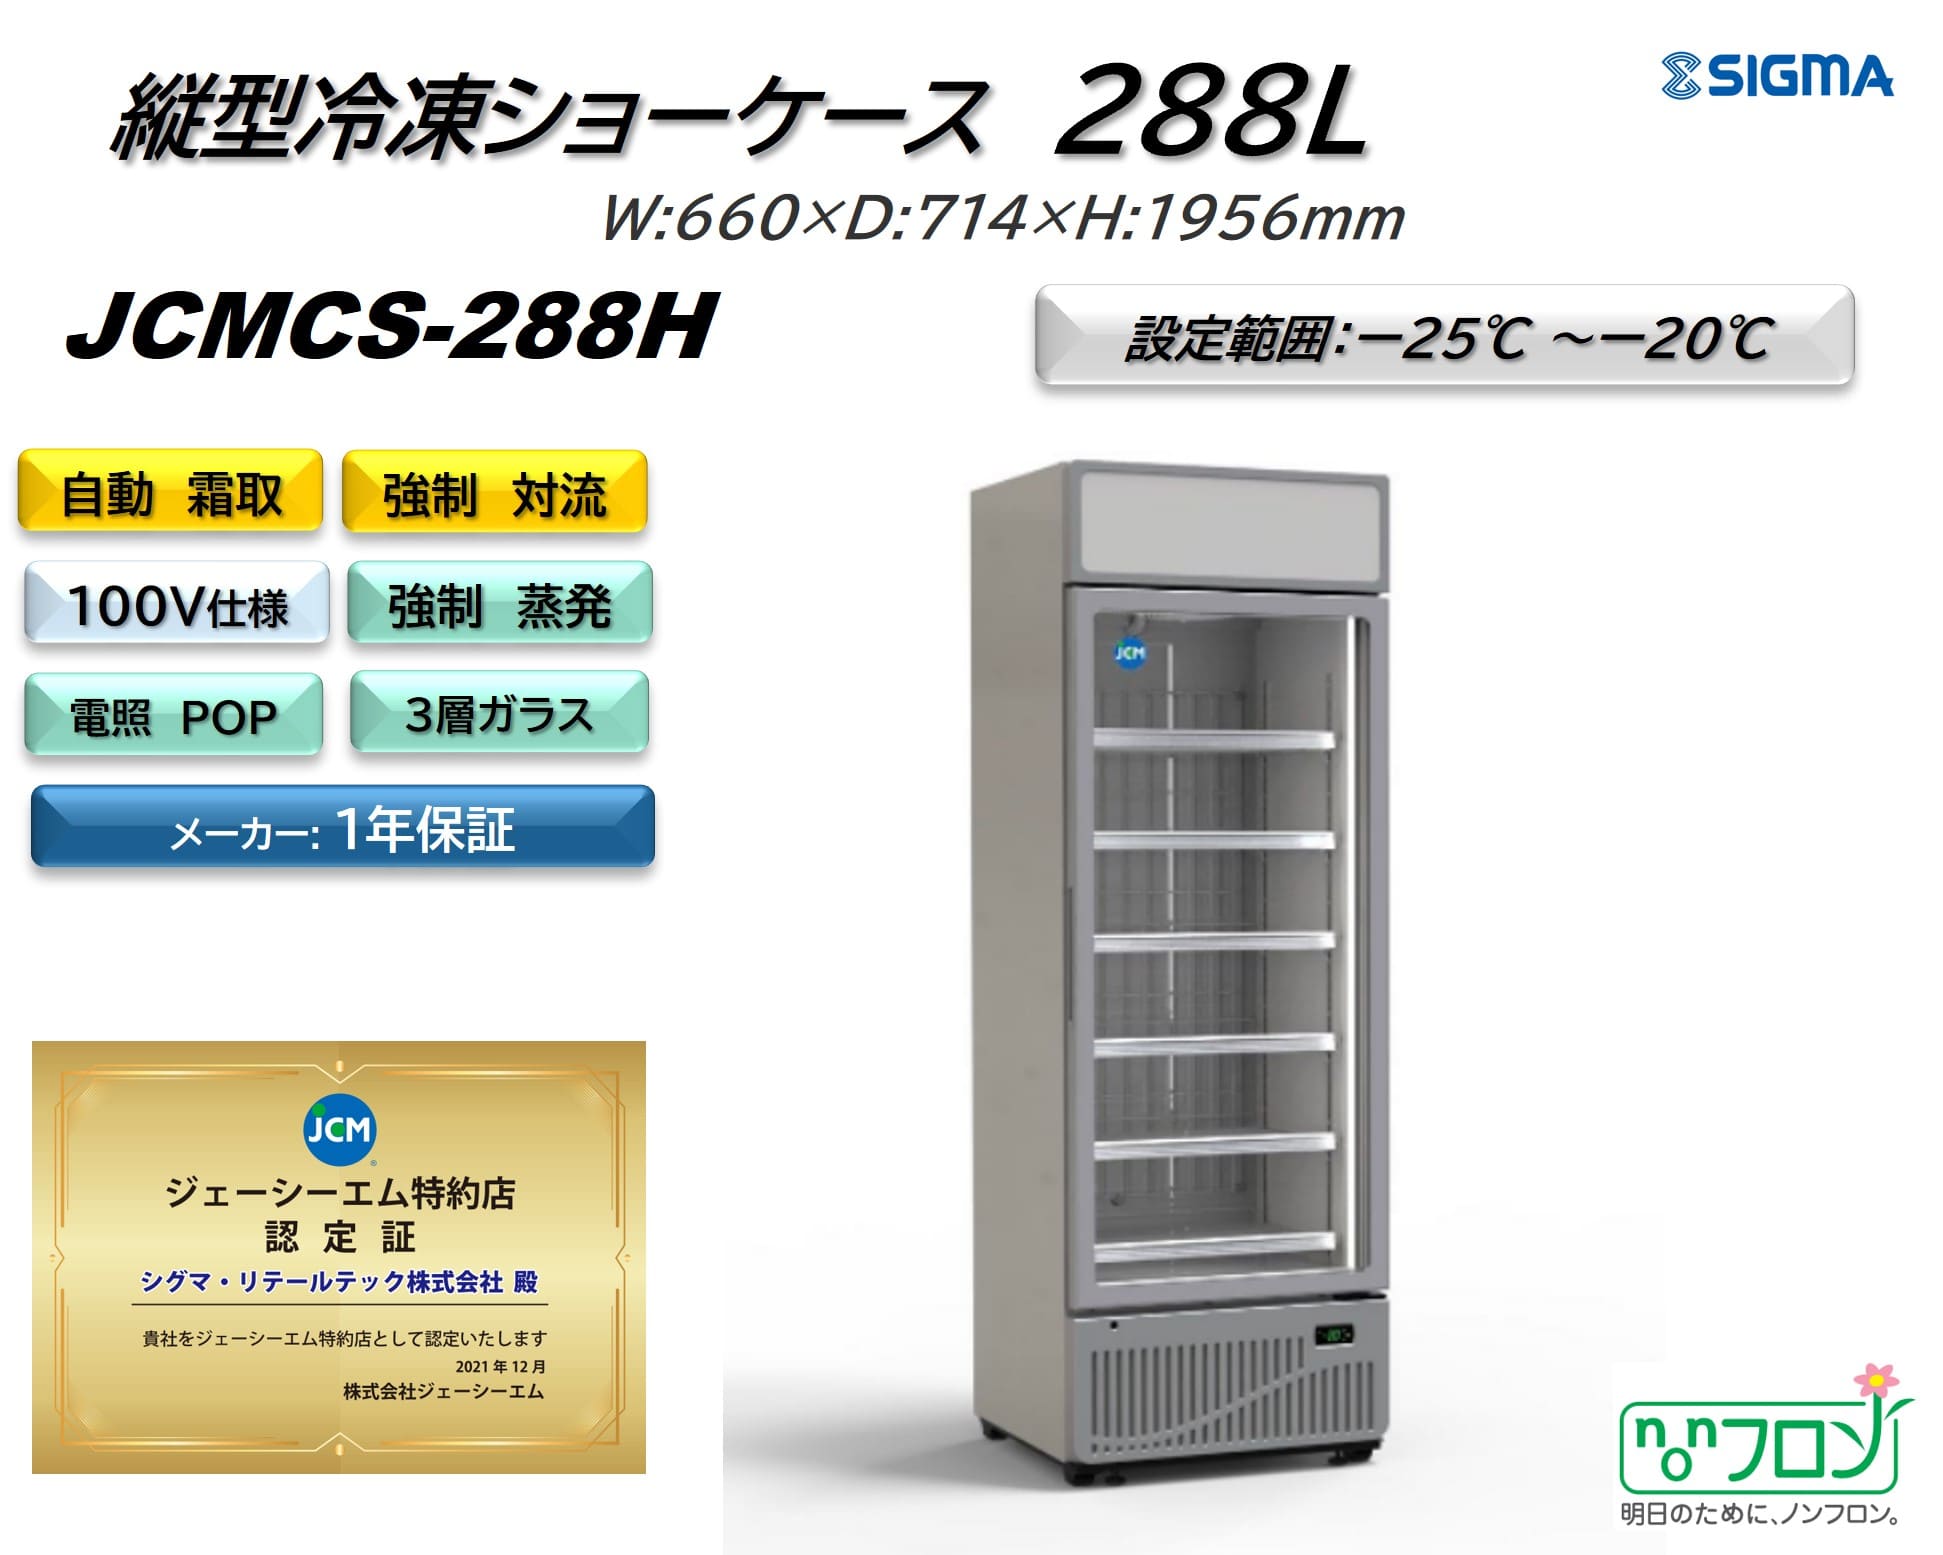 JCMCS-288H タテ型冷凍ショーケース／幅660×奥行714×高さ1956mm